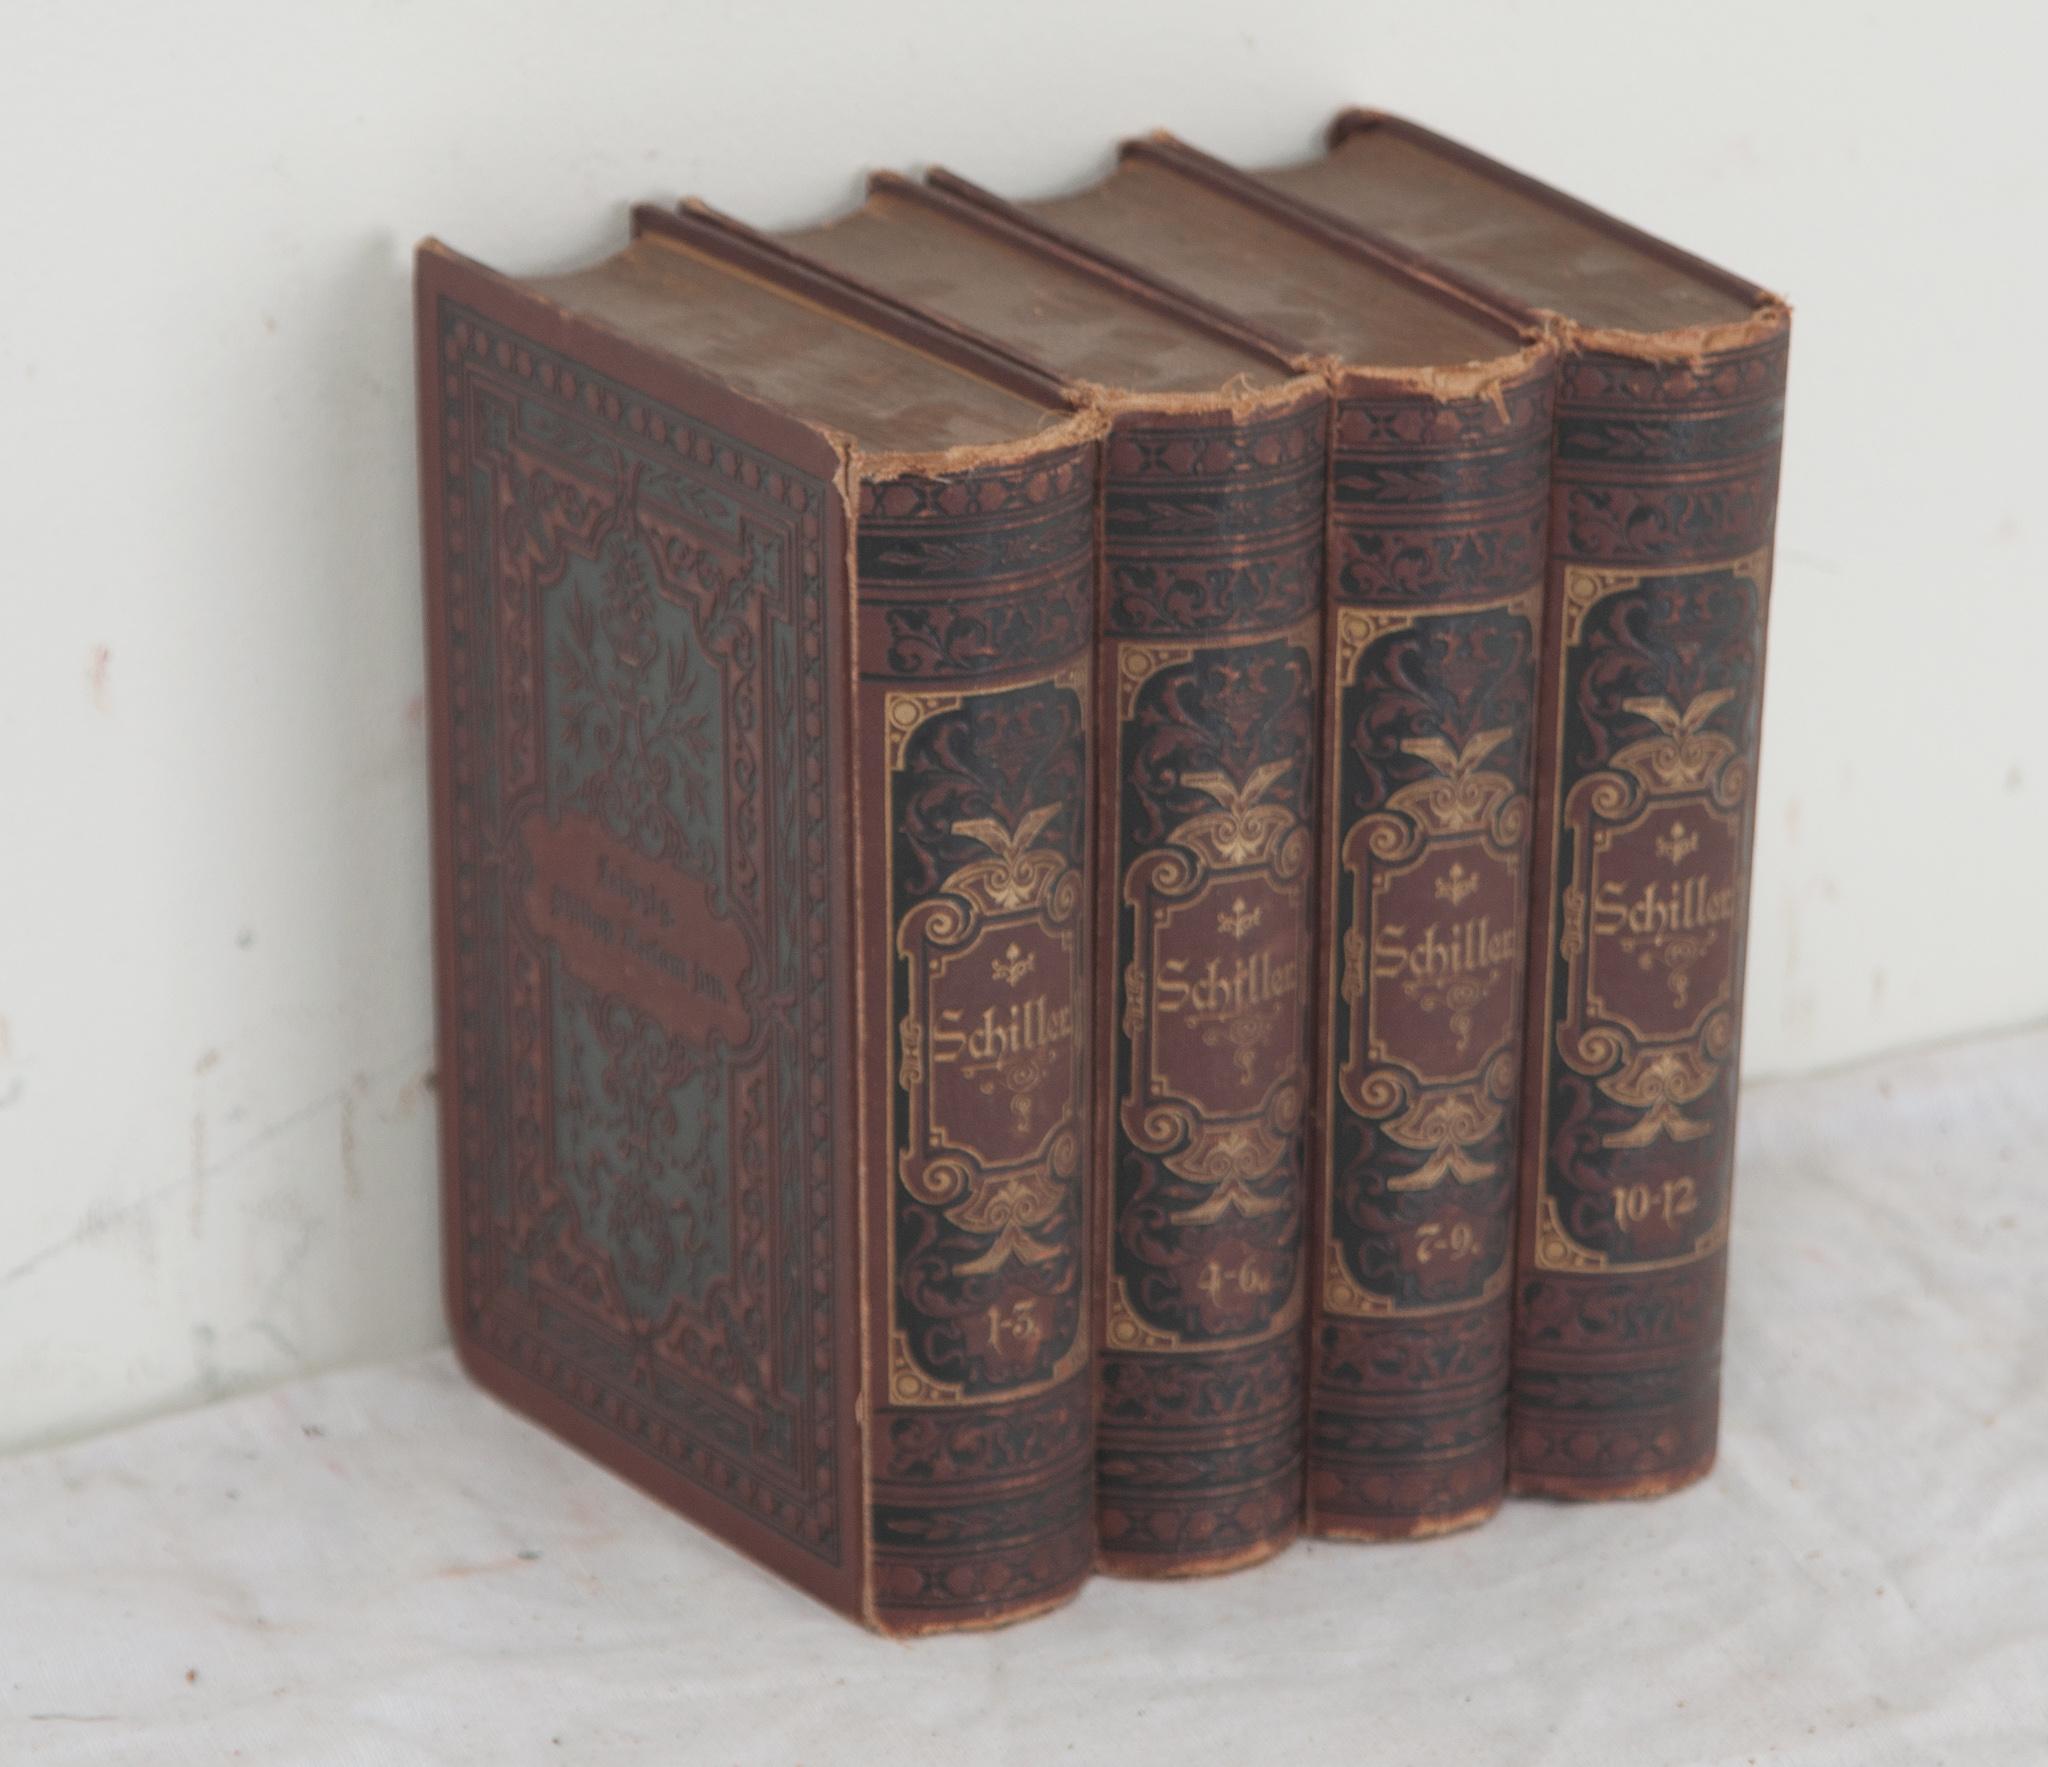 Une collection de quatre volumes de poésie du dramaturge et poète allemand Friedrich Schiller. Relié en cuir avec des lettres dorées, cet ensemble comprend des œuvres trouvées par les fils de Schiller après sa mort et qui ne sont donc pas incluses